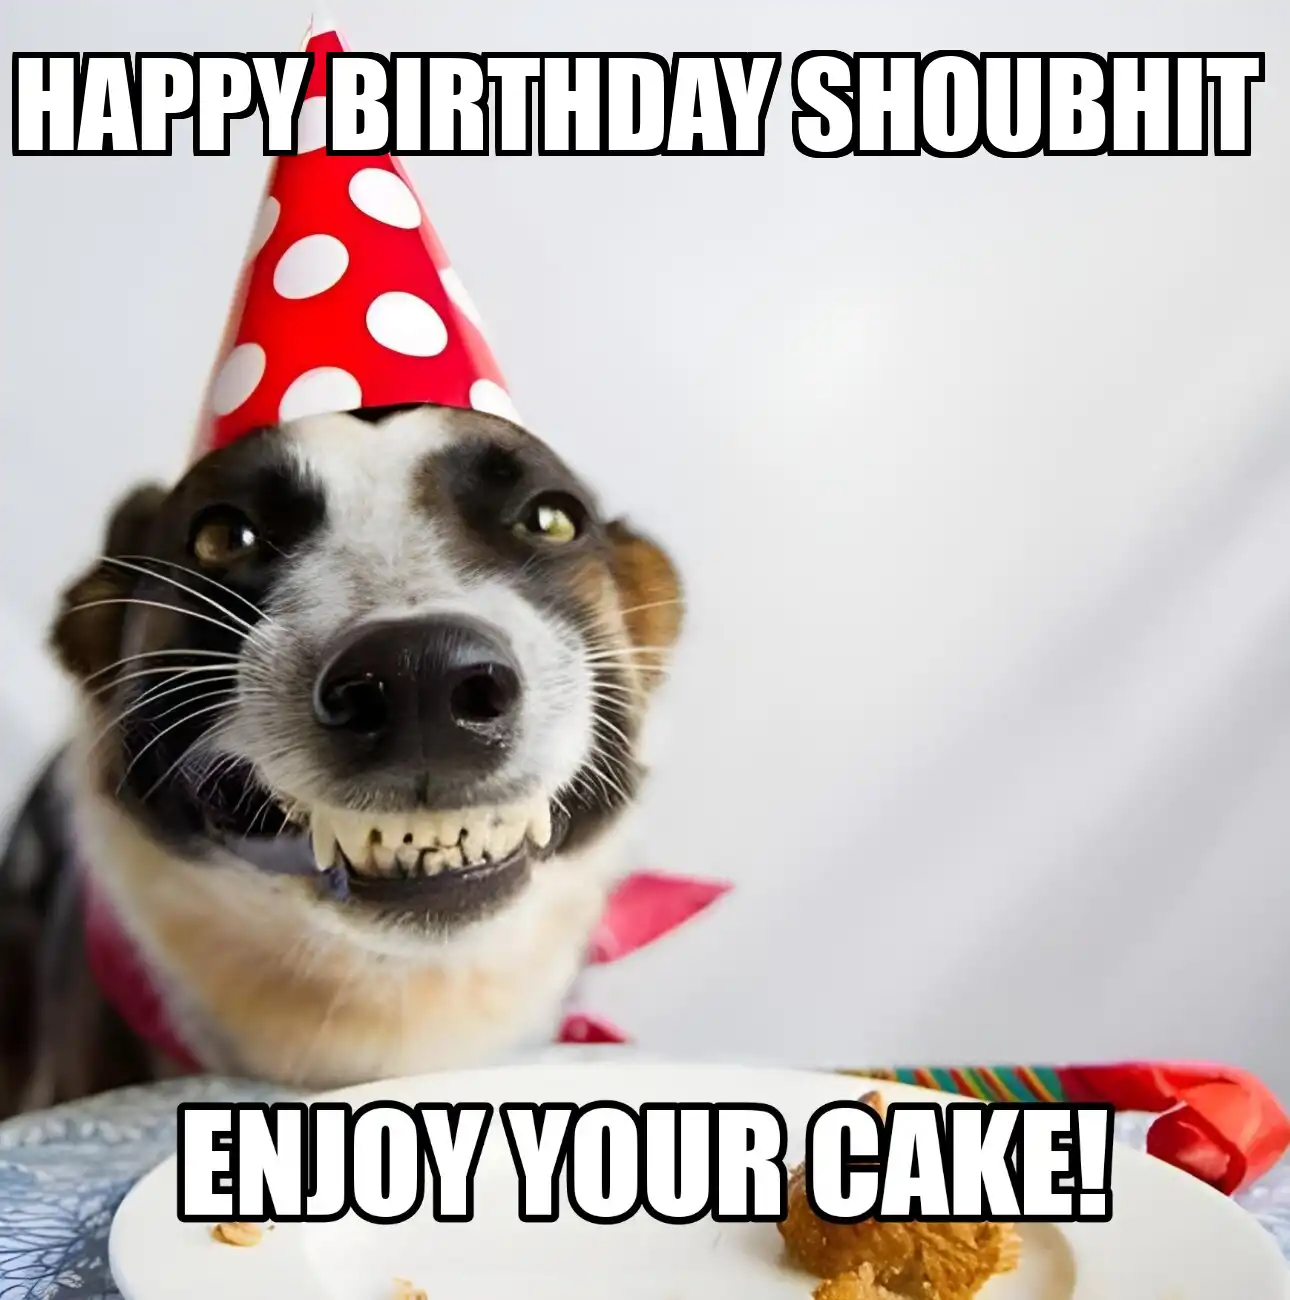 Happy Birthday Shoubhit Enjoy Your Cake Dog Meme